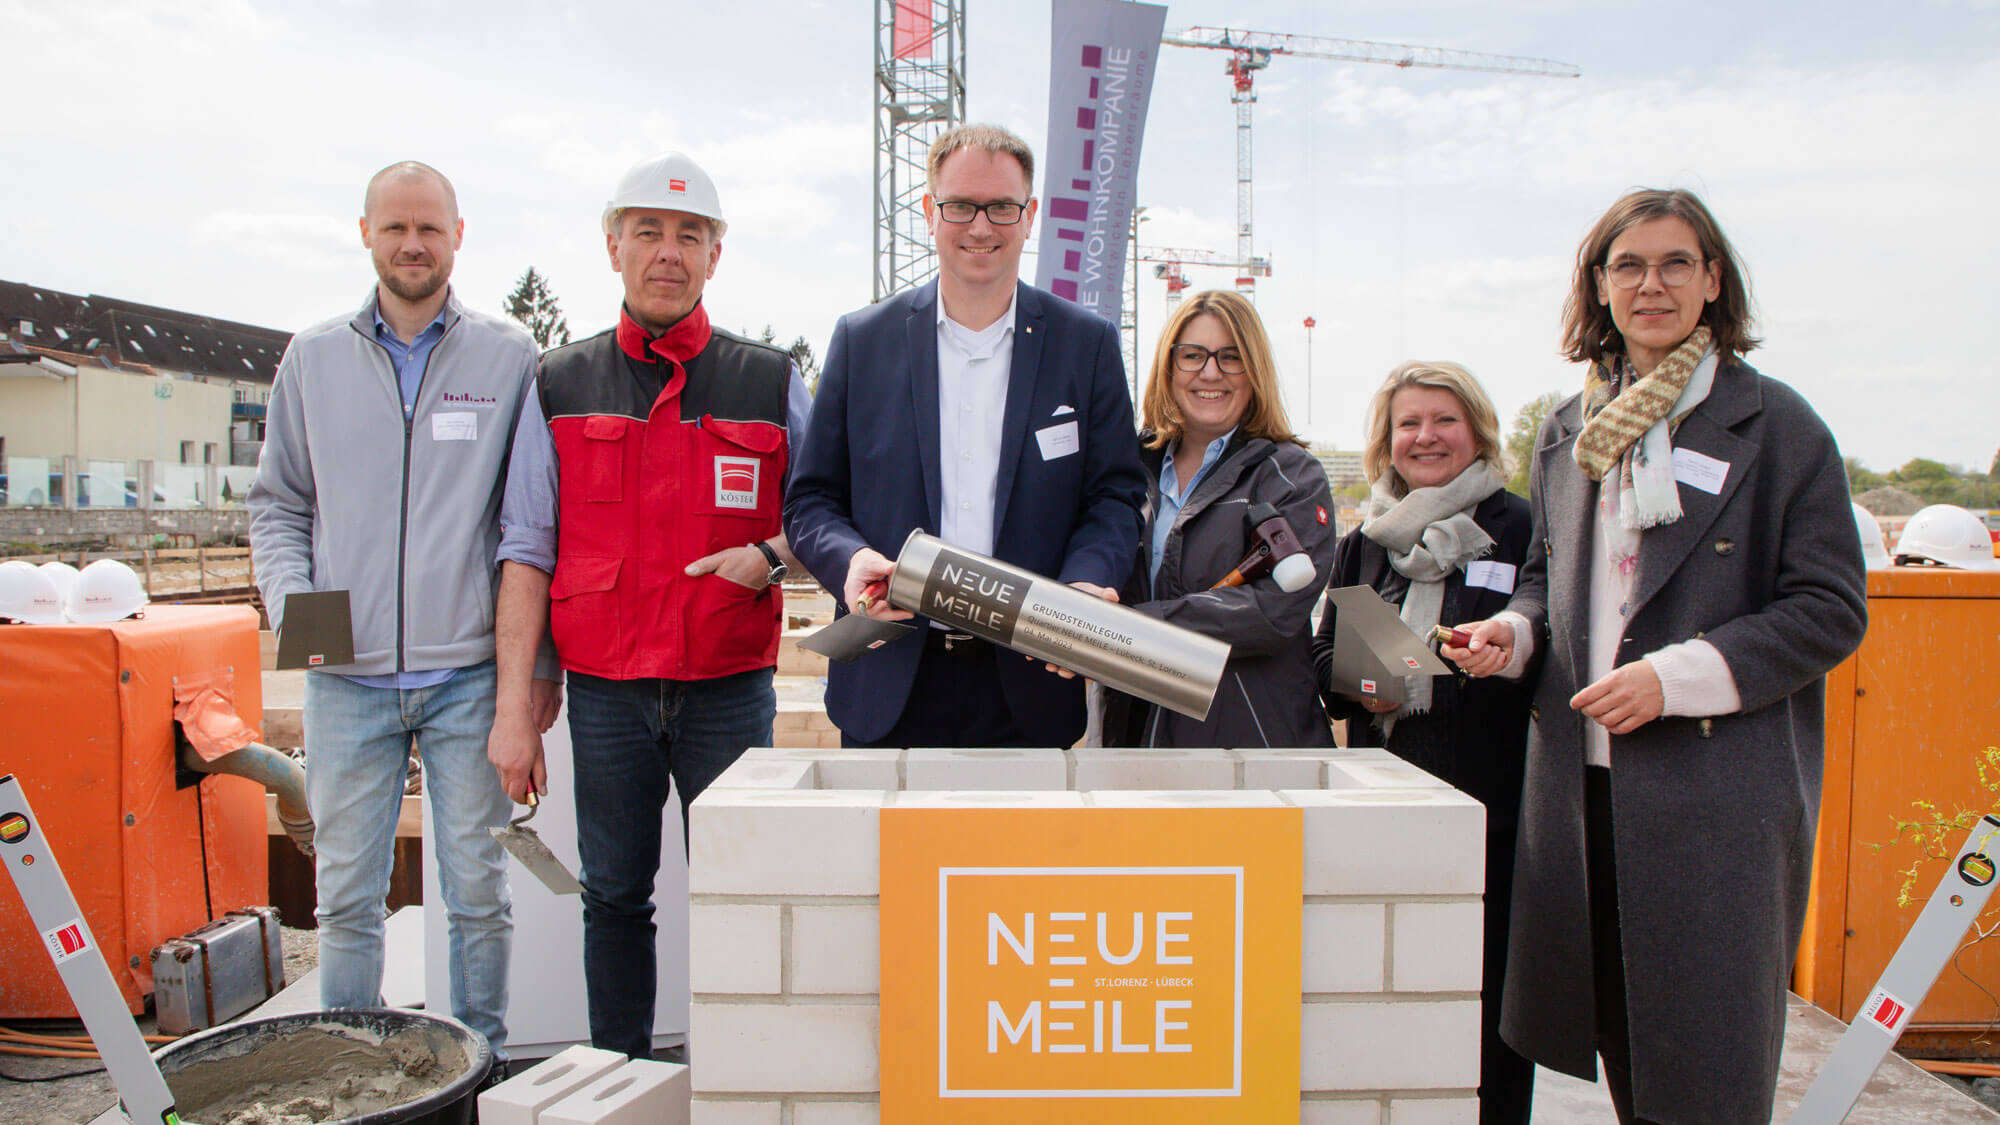 Grundsteinlegung des Neubauprojekts Neue Meile – Gruppenfoto mit der Rolle